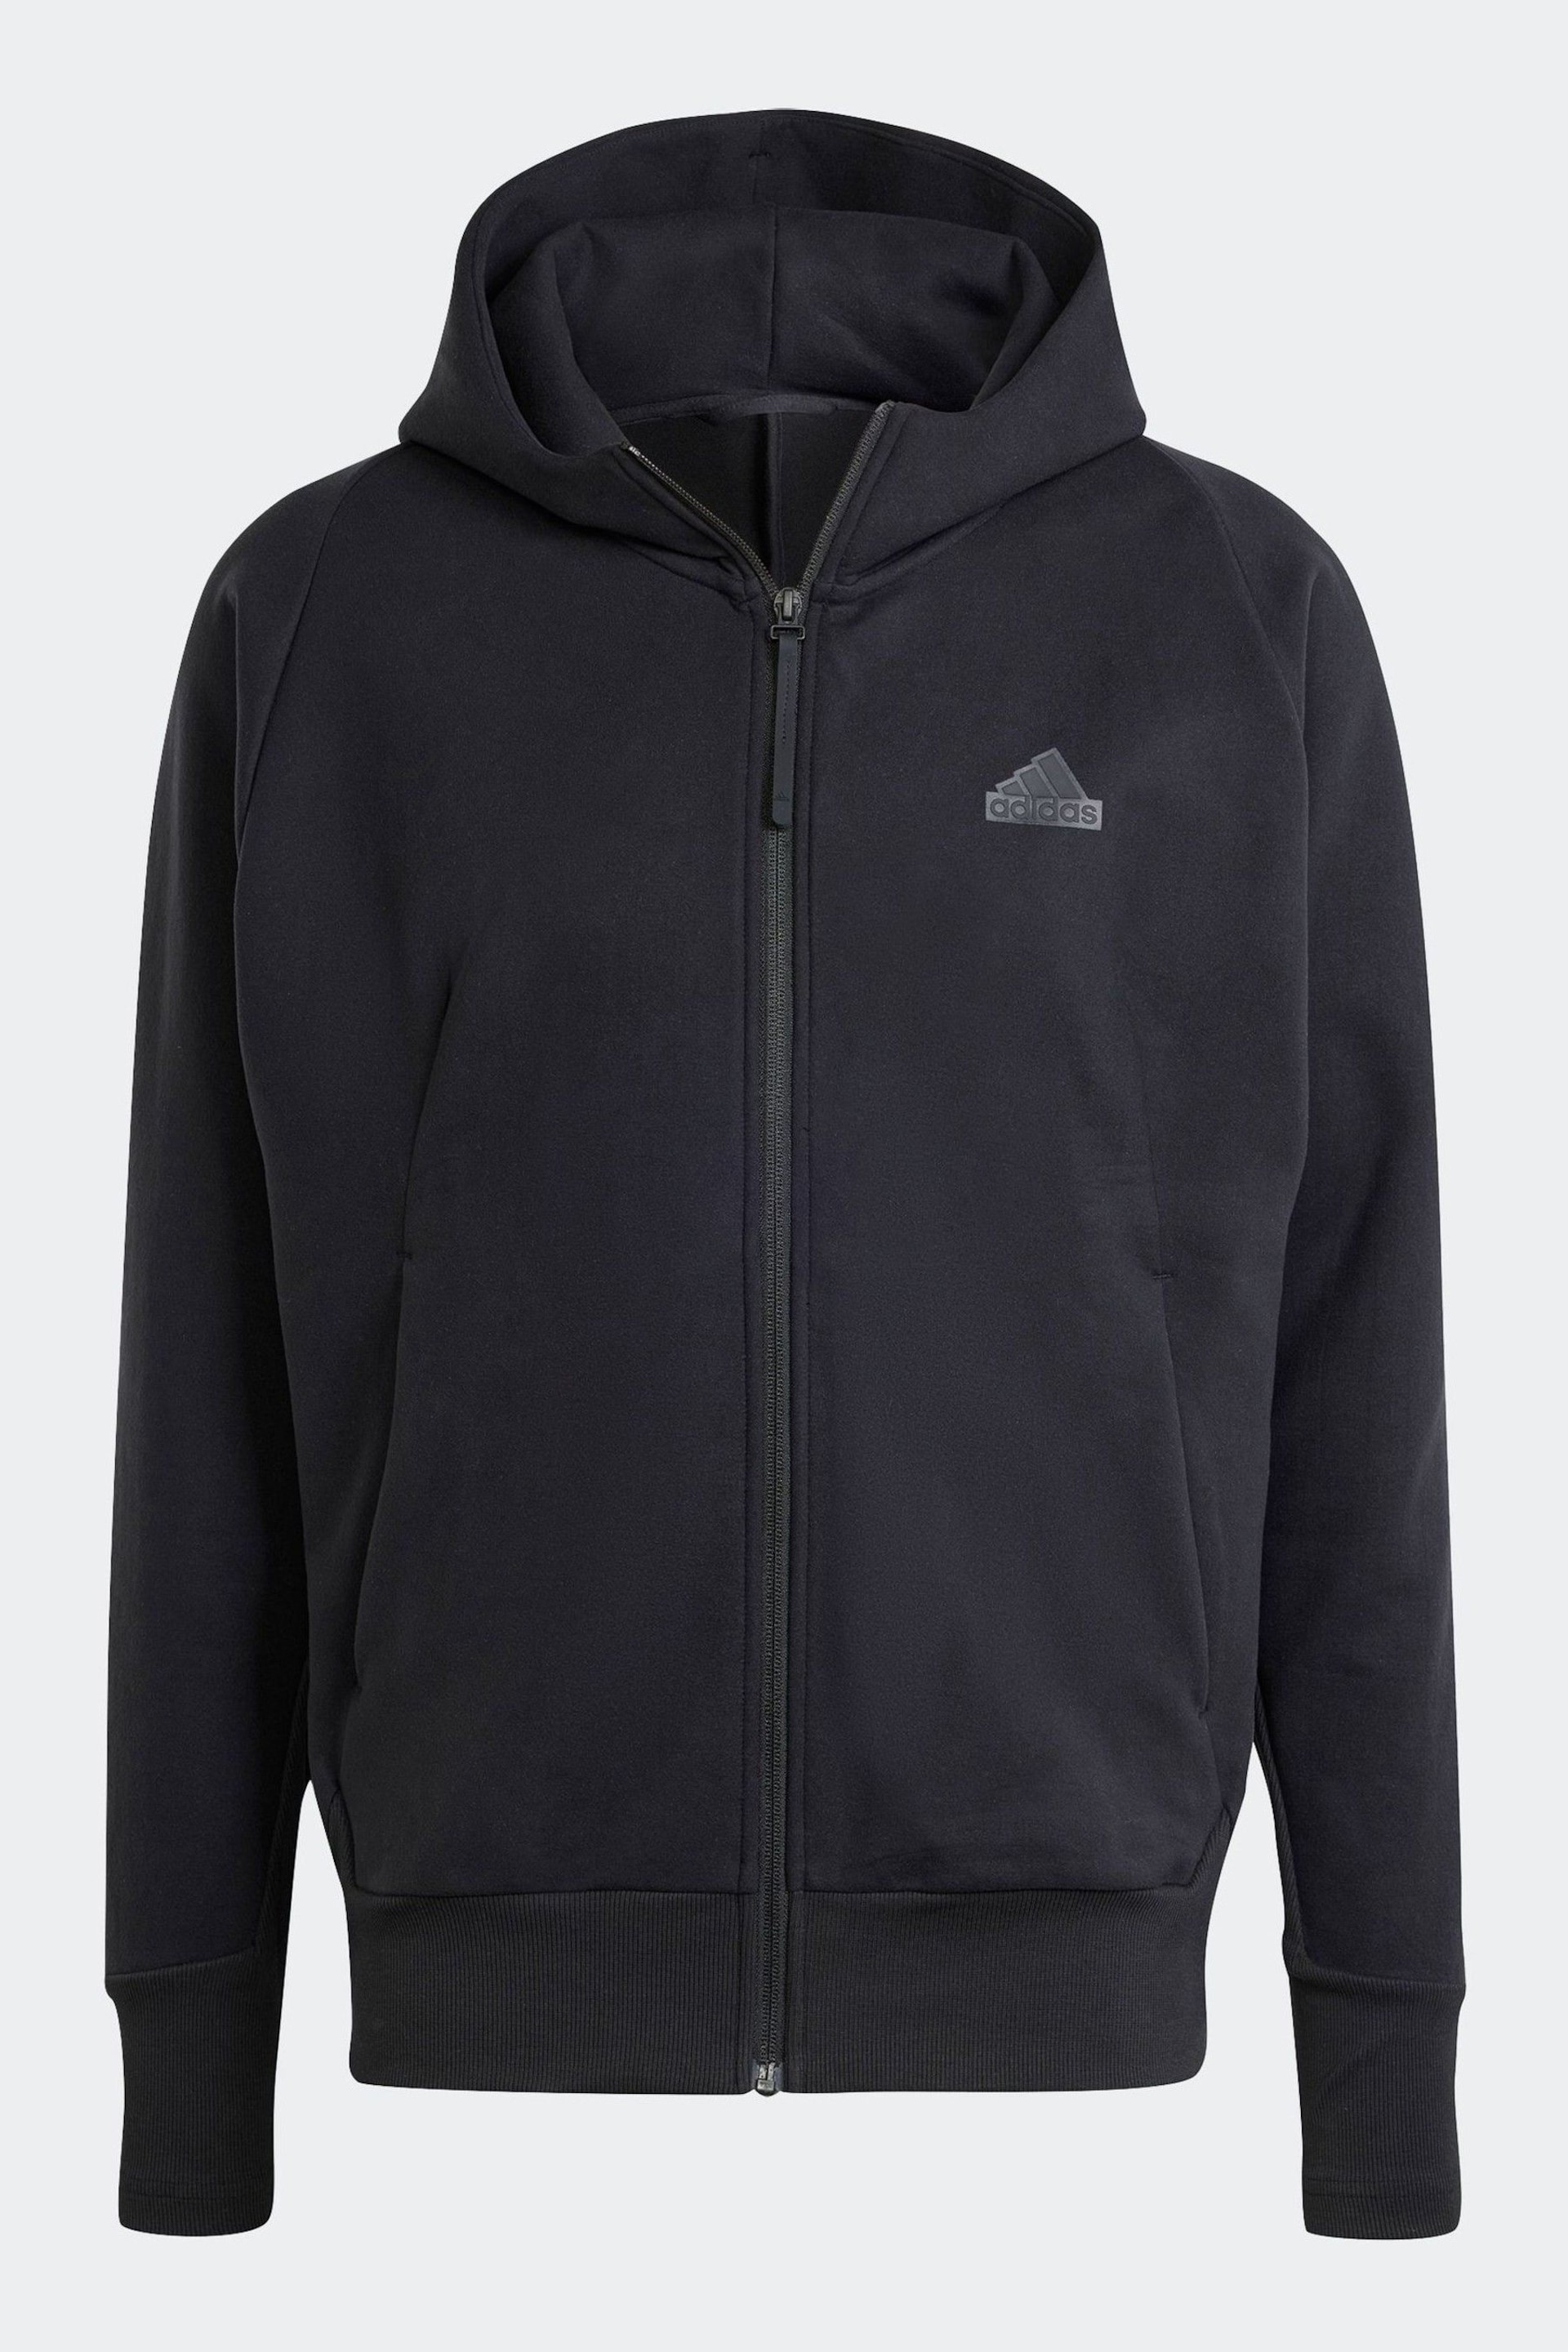 adidas Black Sportswear Z.N.E. Winterized Full Zip Hooded Jacket - Image 6 of 7